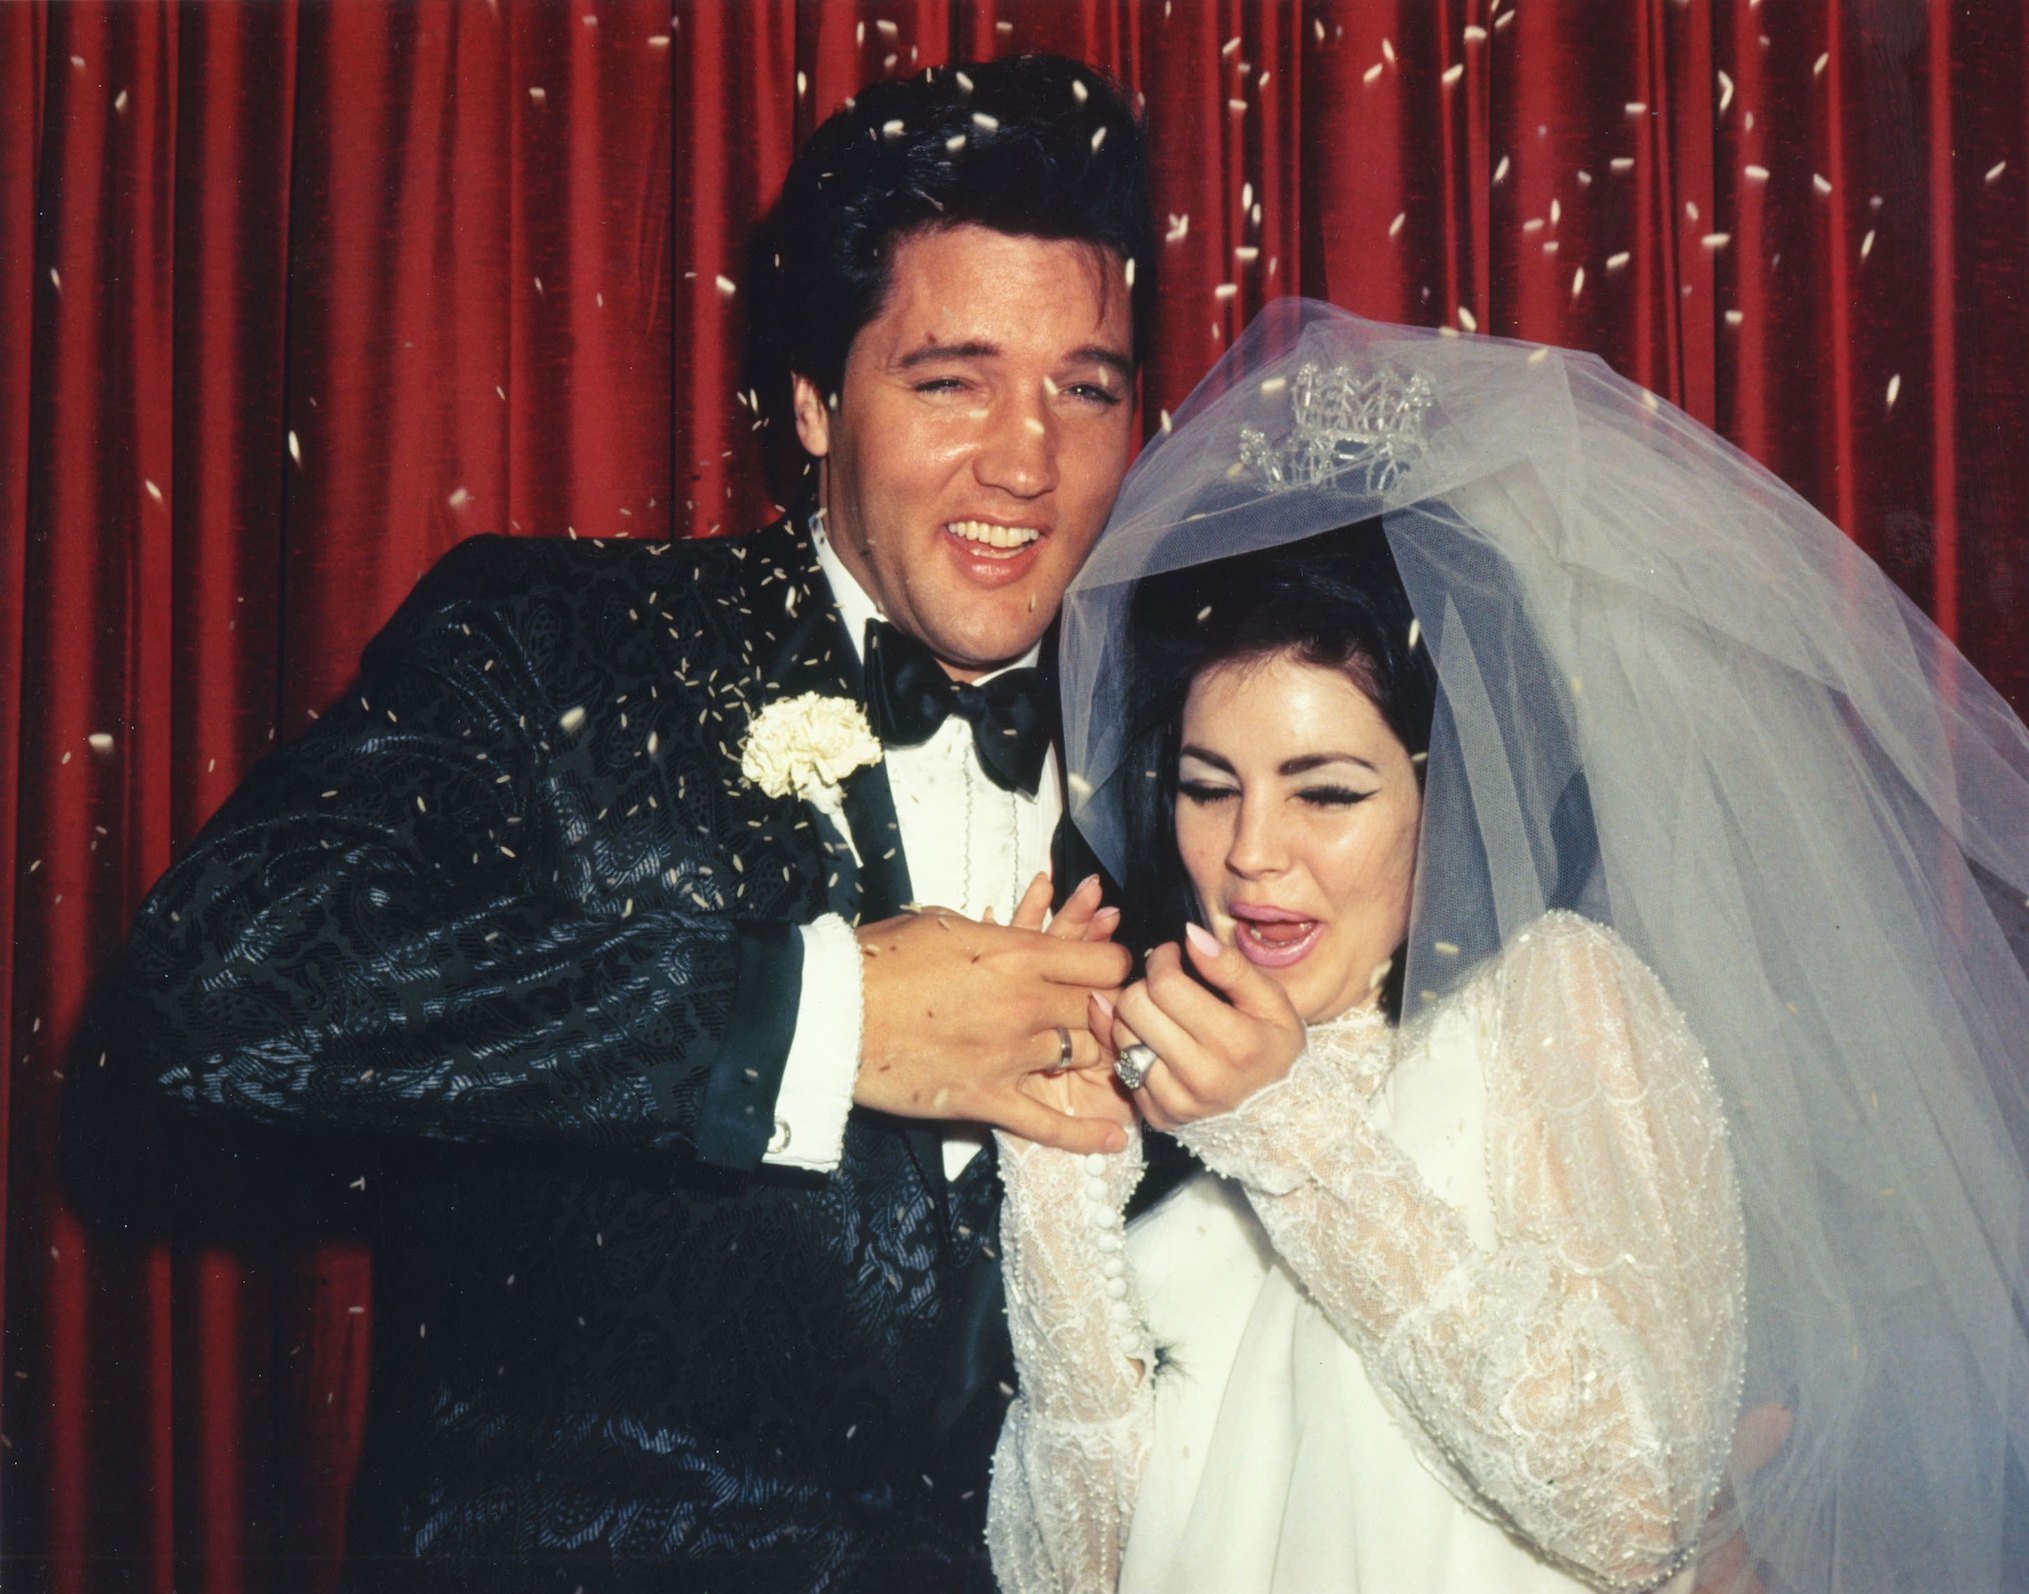 Wedding Photos of Elvis Presley to Priscilla Presley